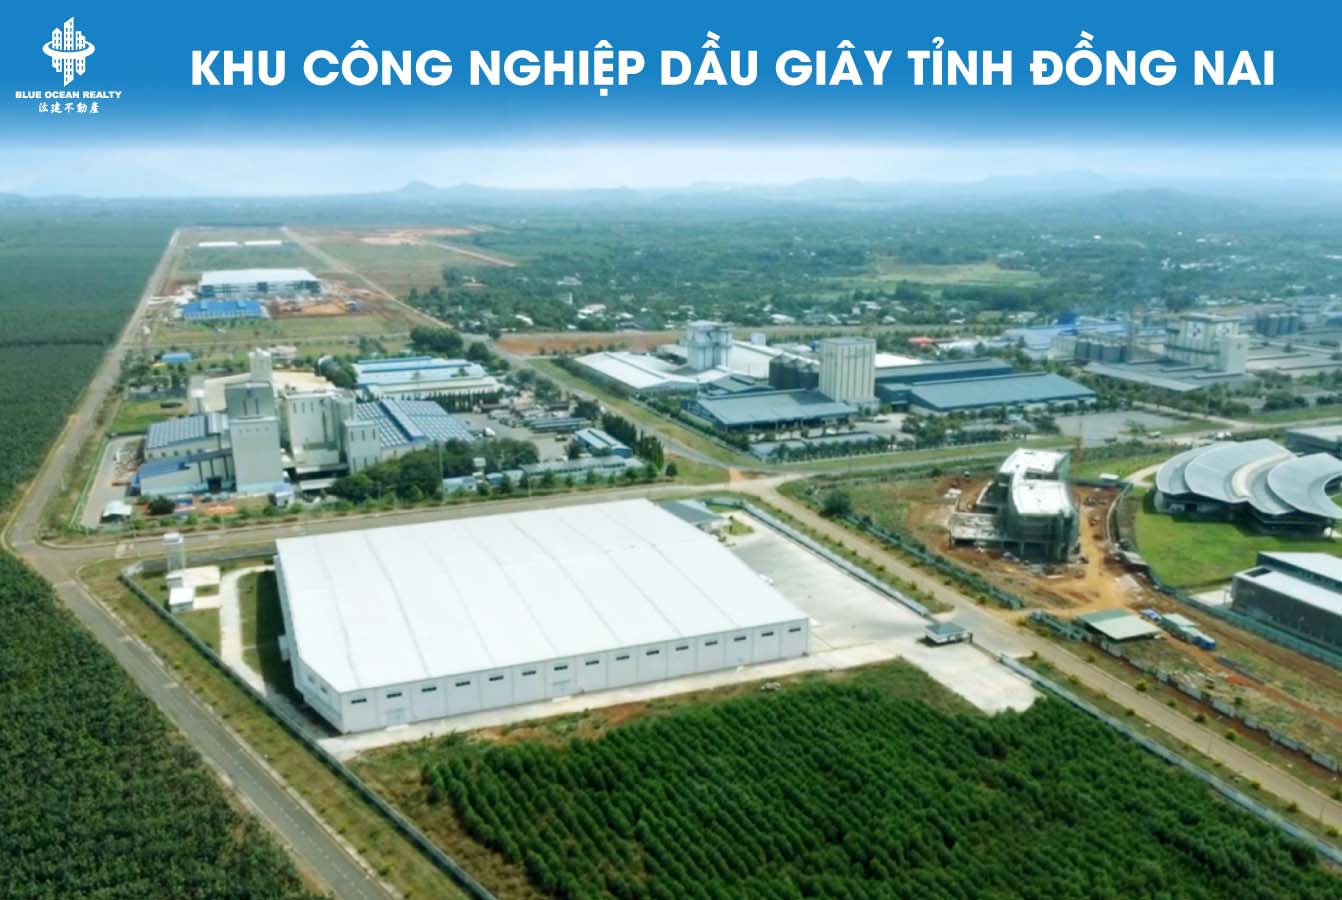 Khu công nghiệp Dầu Giây tỉnh Đồng Nai